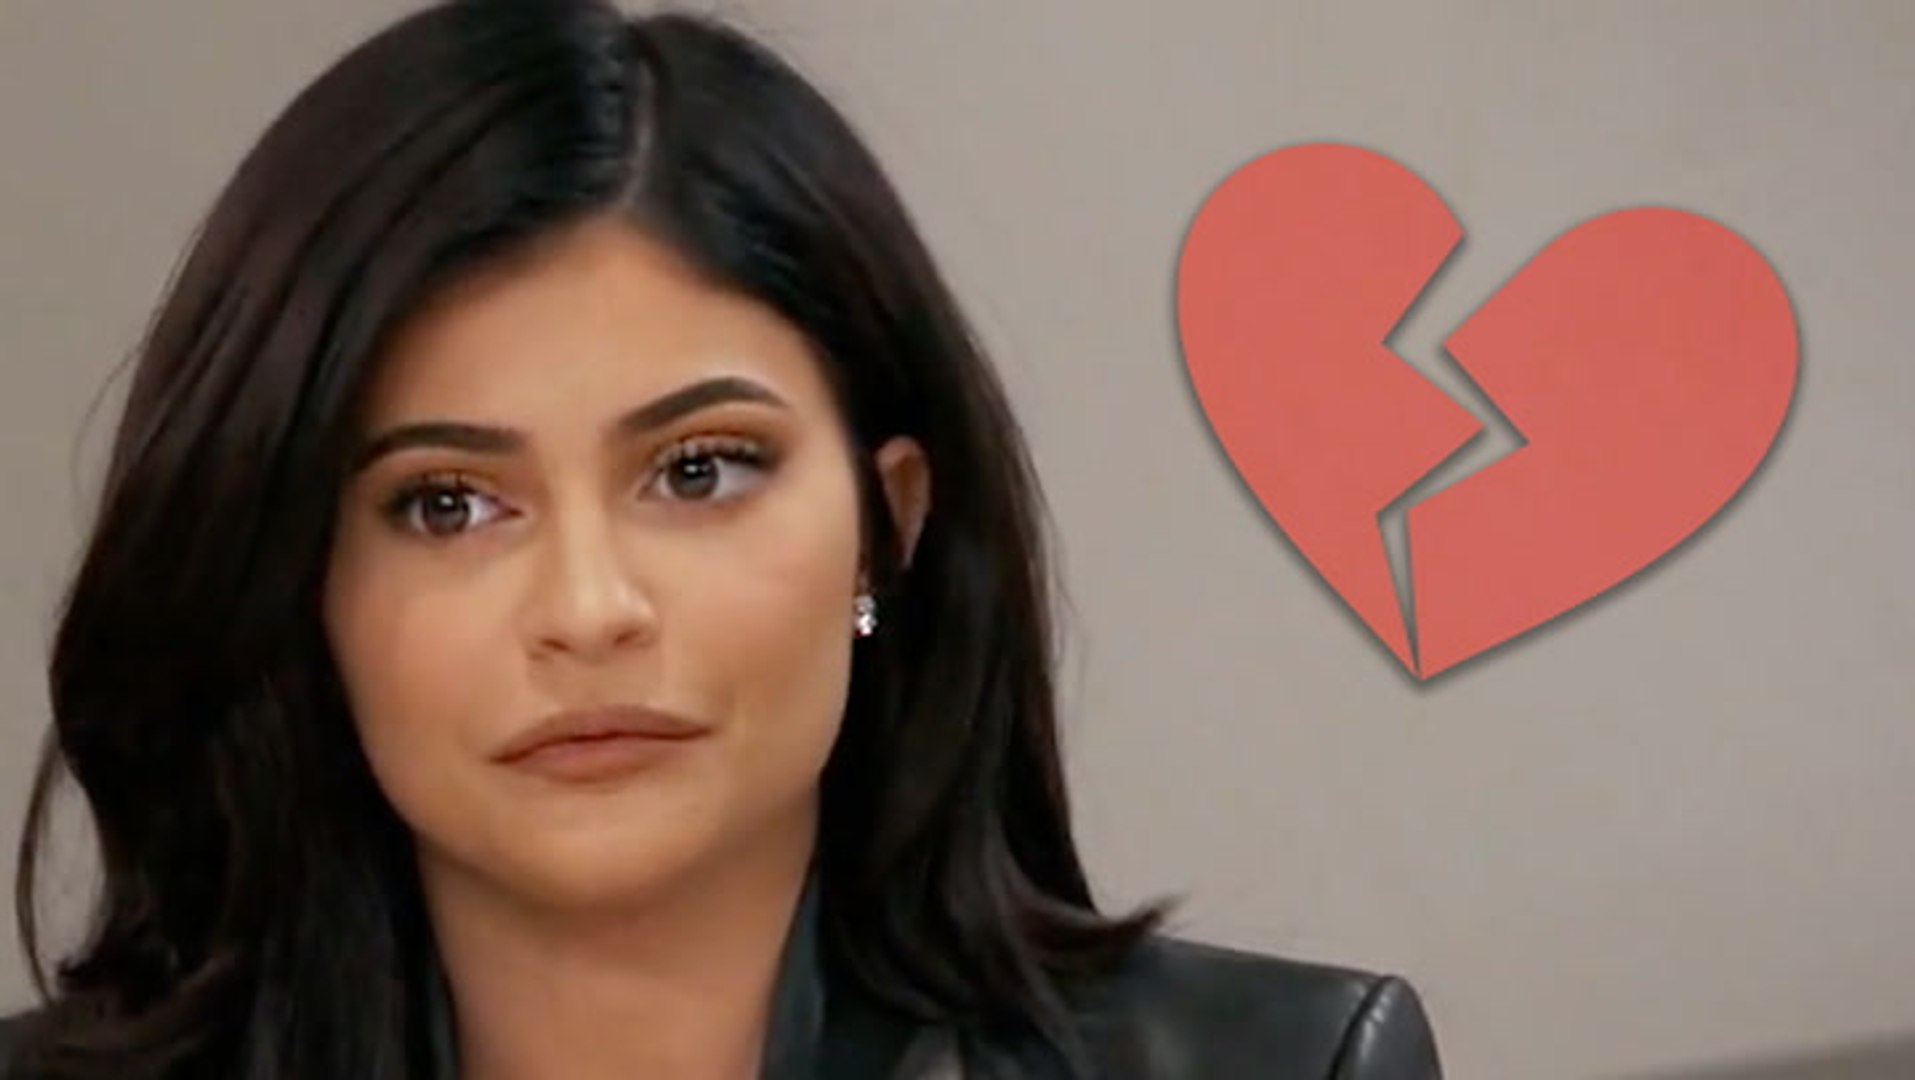 Kylie Jenner Shares Emotional Post After Travis Scott Break Up